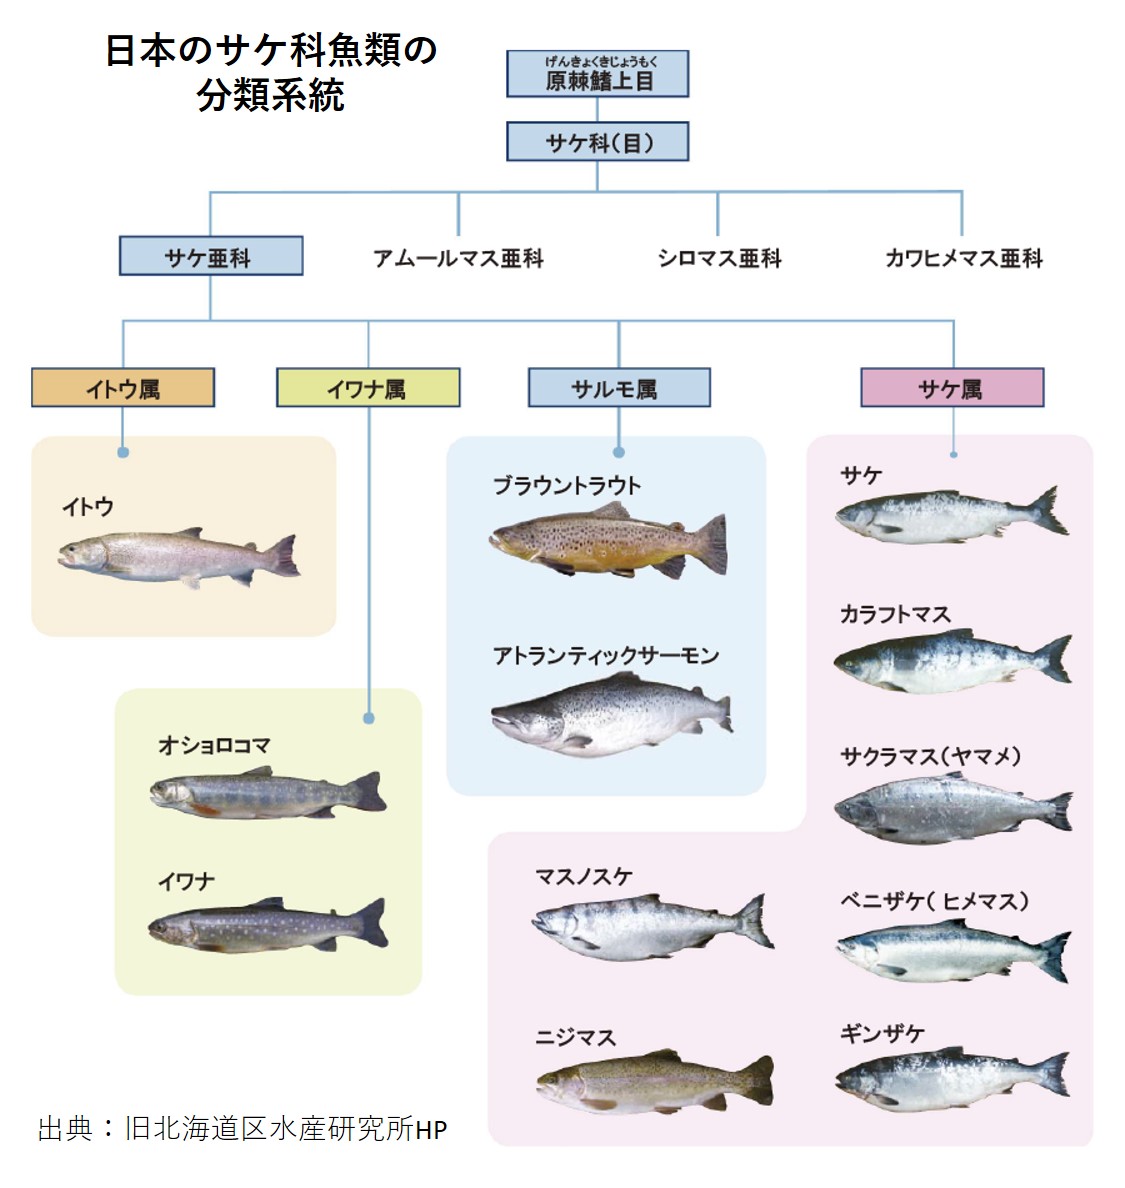 農林水産省 サケ 鮭 サーモン と マス 鱒 トラウト の違いはご存じでしょうか 実は呼び名に違い は無いのです サケ科の魚は分類学的にはこれらの種に分かれますが 和名 英語名や商品名などが時間の経過の中で混ざってしまった